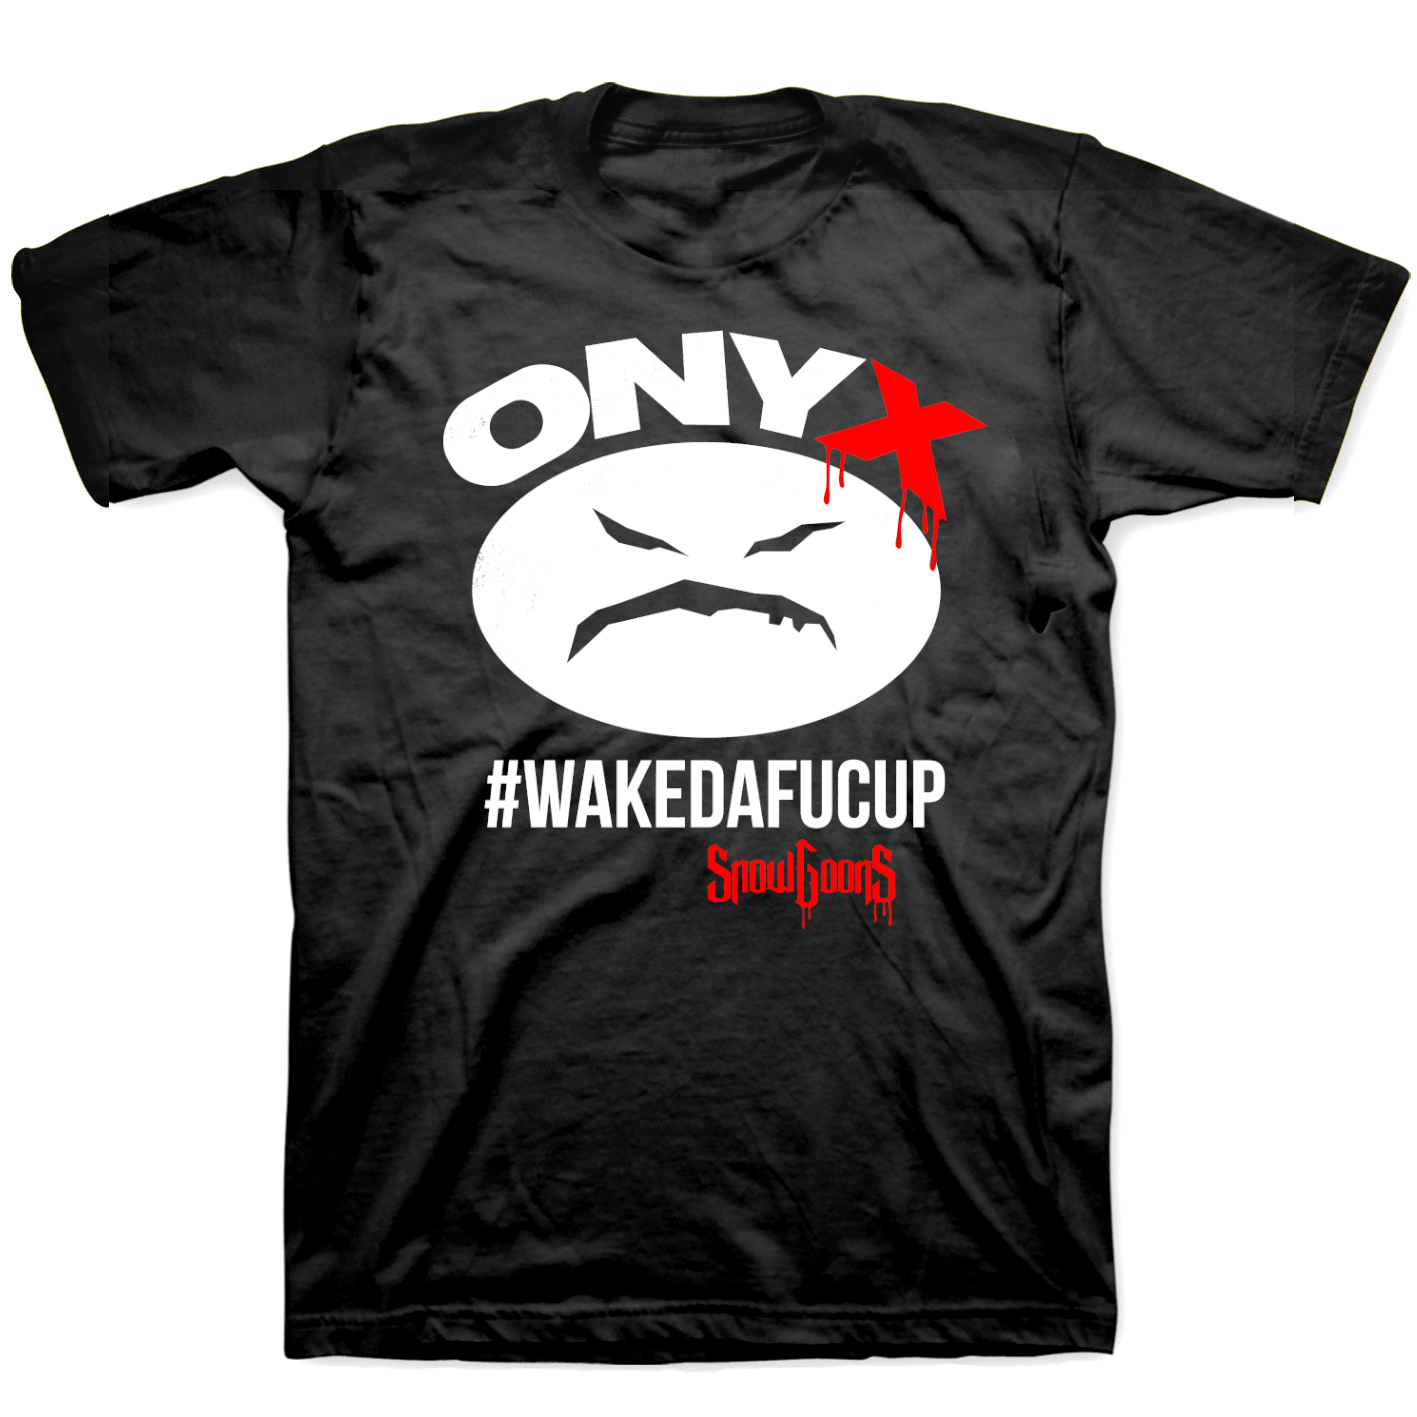 https://www.goonsgear.com/wp-content/uploads/2021/07/Onyx-WakeDaFucUp-Shirt.jpg